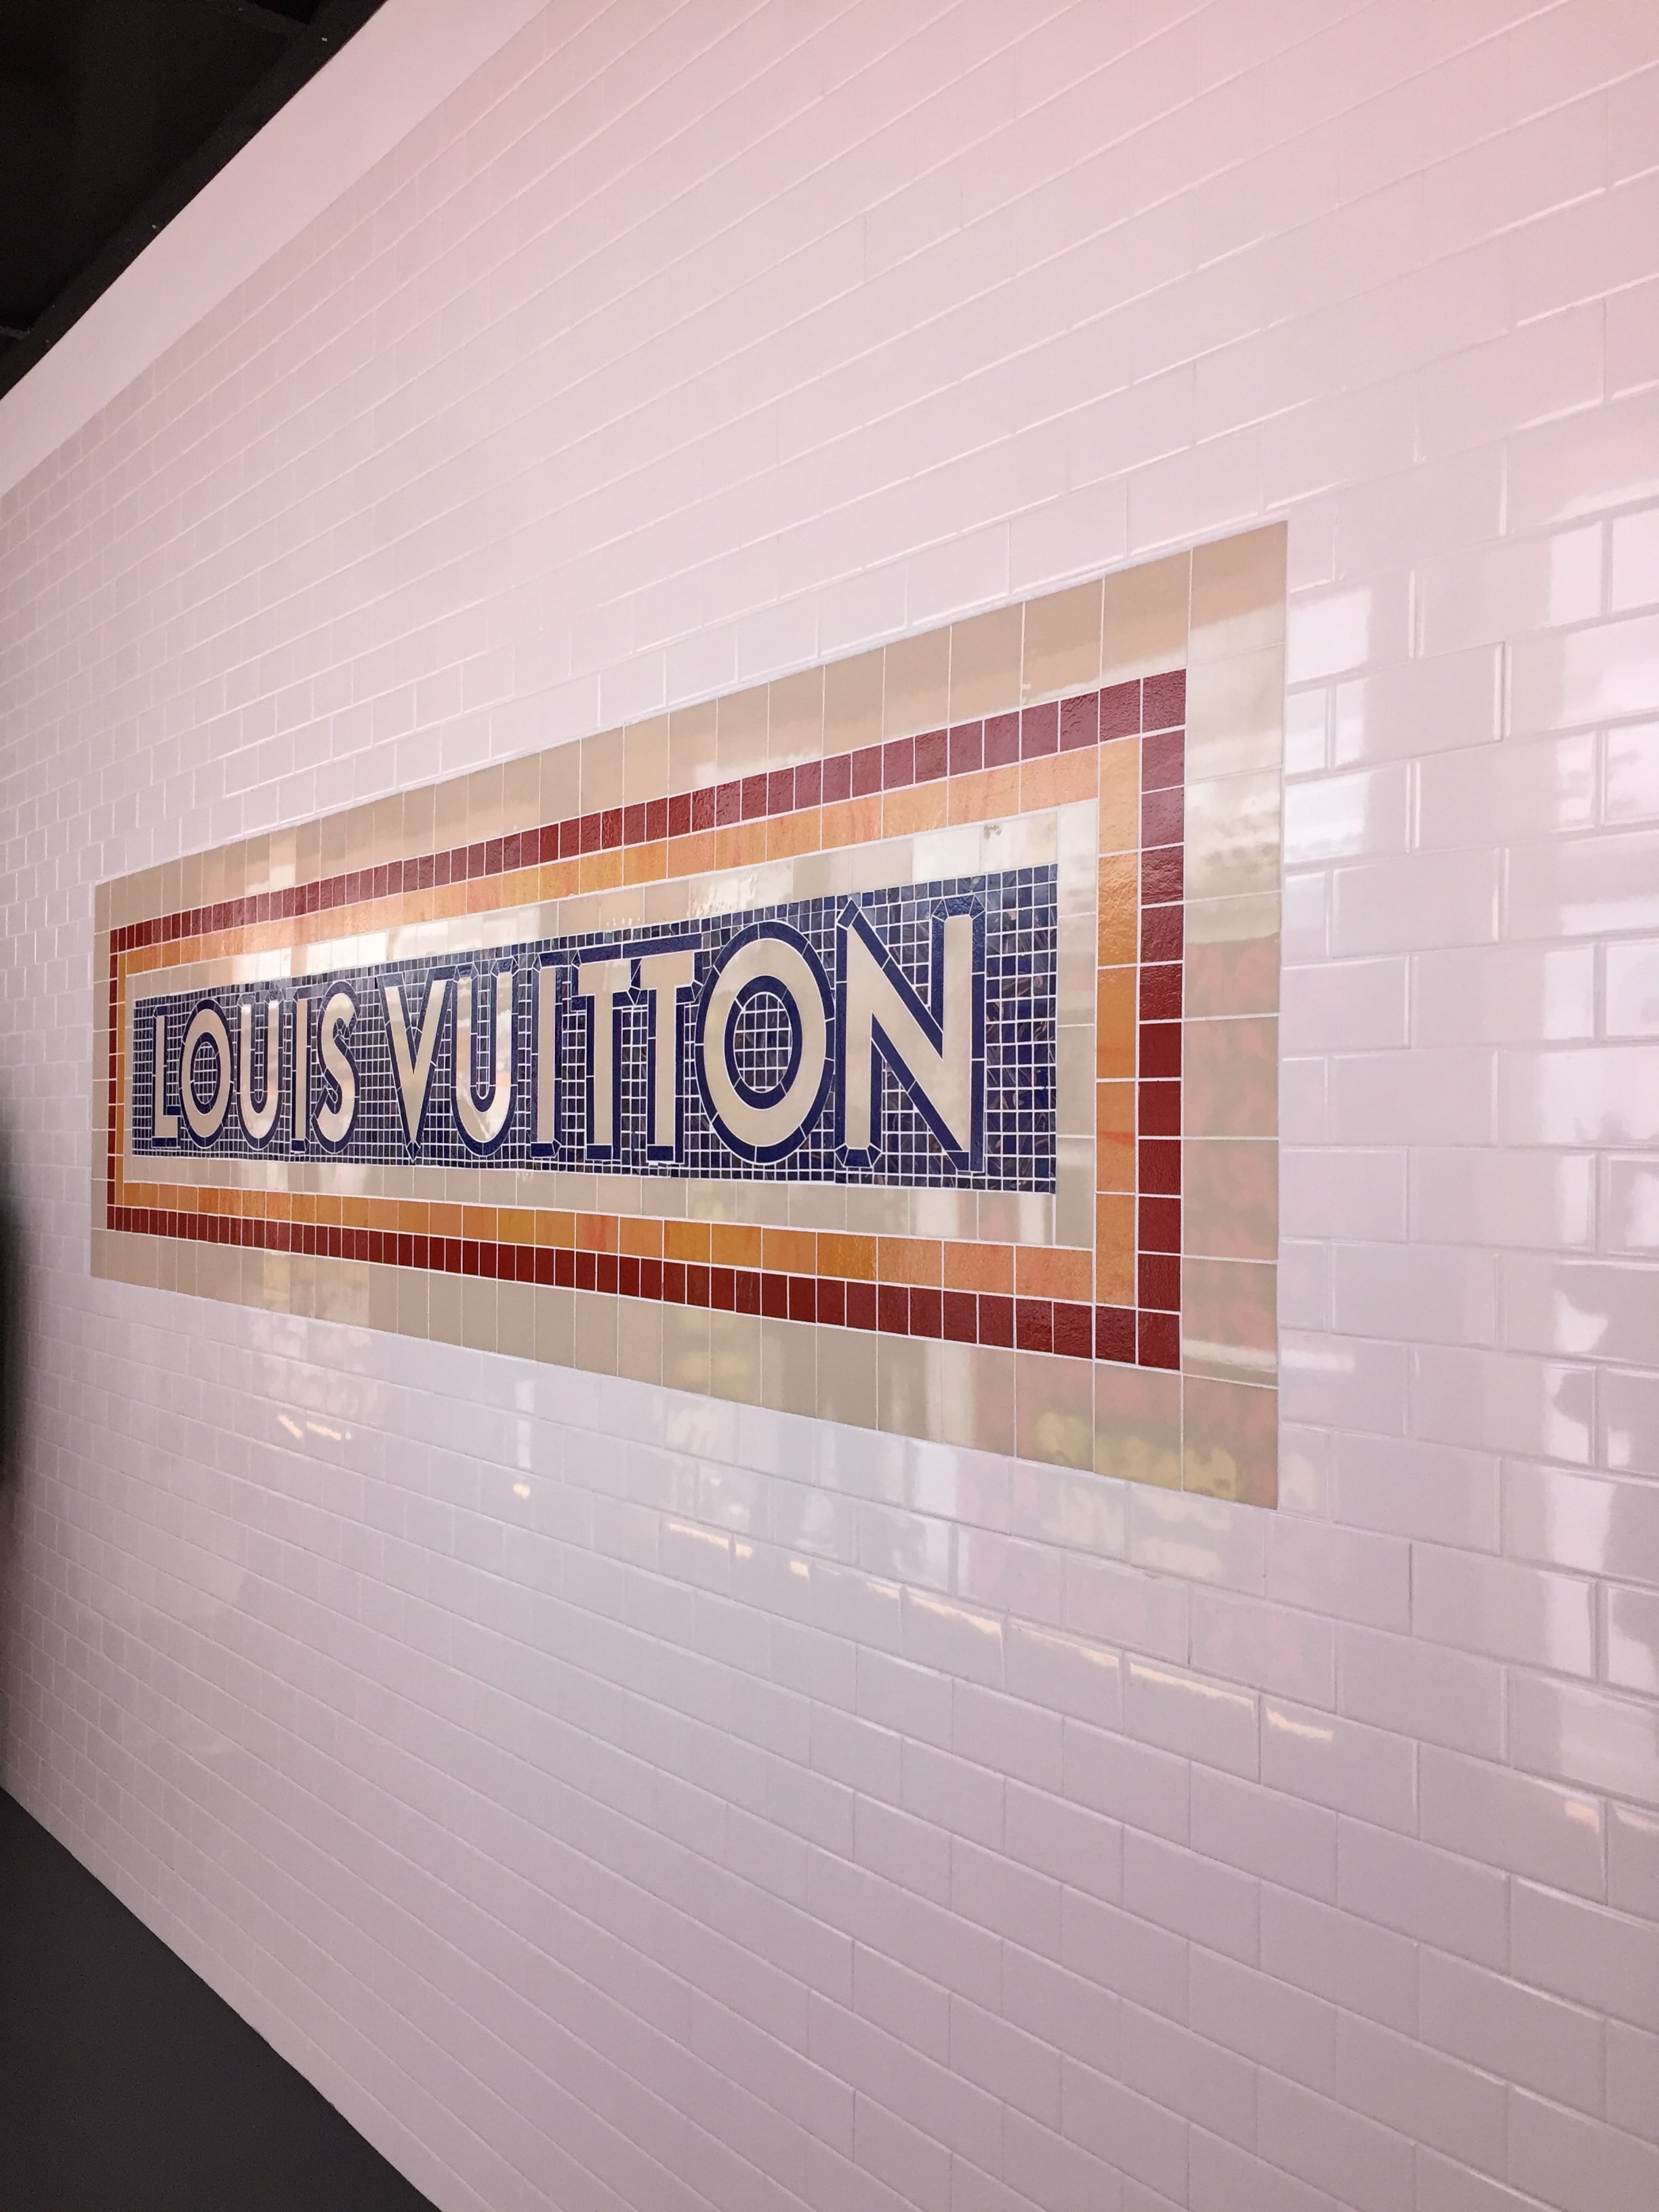 Paris Fashion Week: Louis Vuitton installation wows tourists on Champs- Élysées